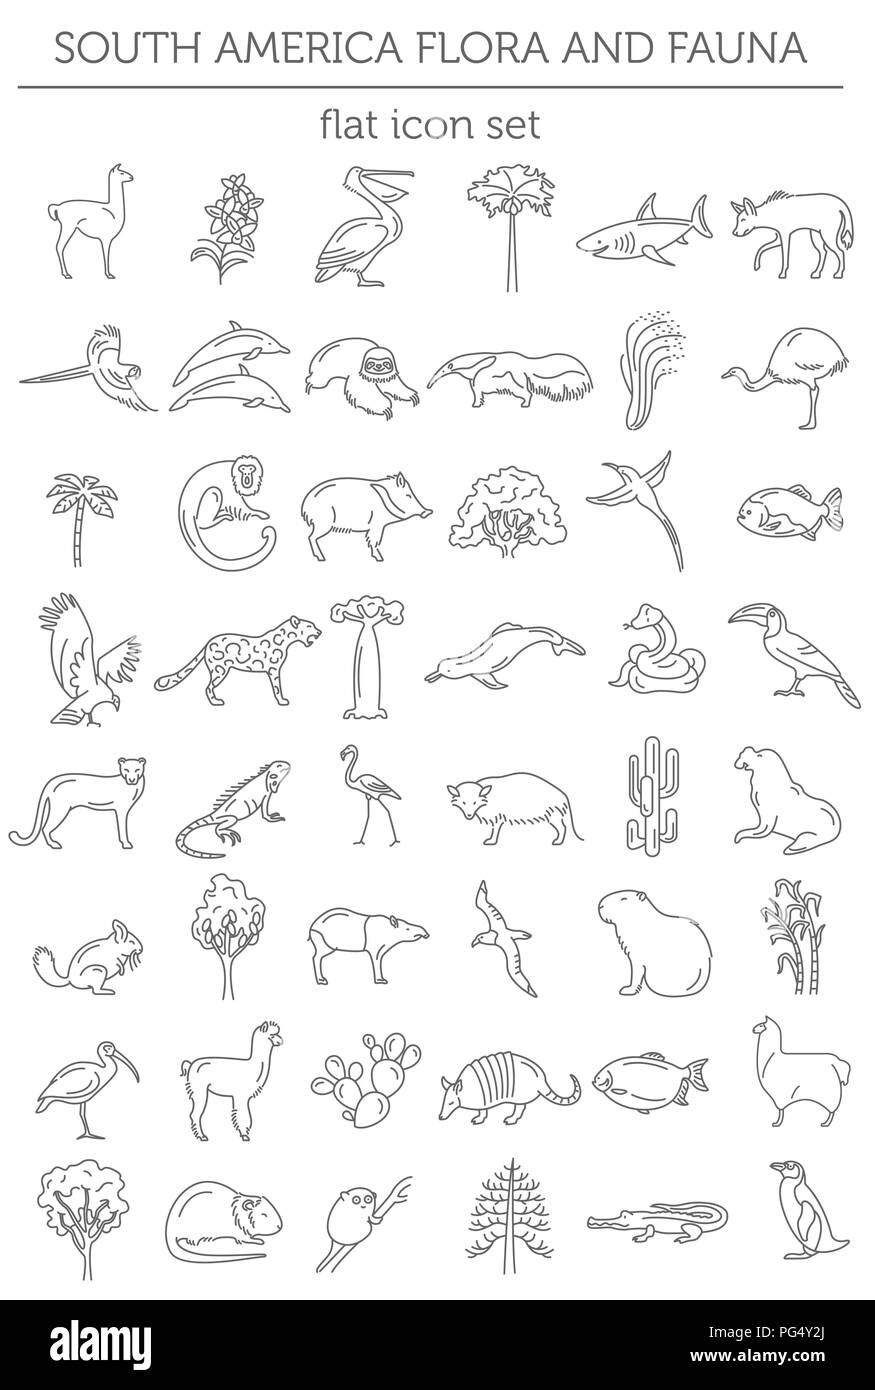 Sudamérica plana elementos de flora y fauna. Animales, aves y vida marina línea simple conjunto de iconos. Ilustración vectorial Ilustración del Vector